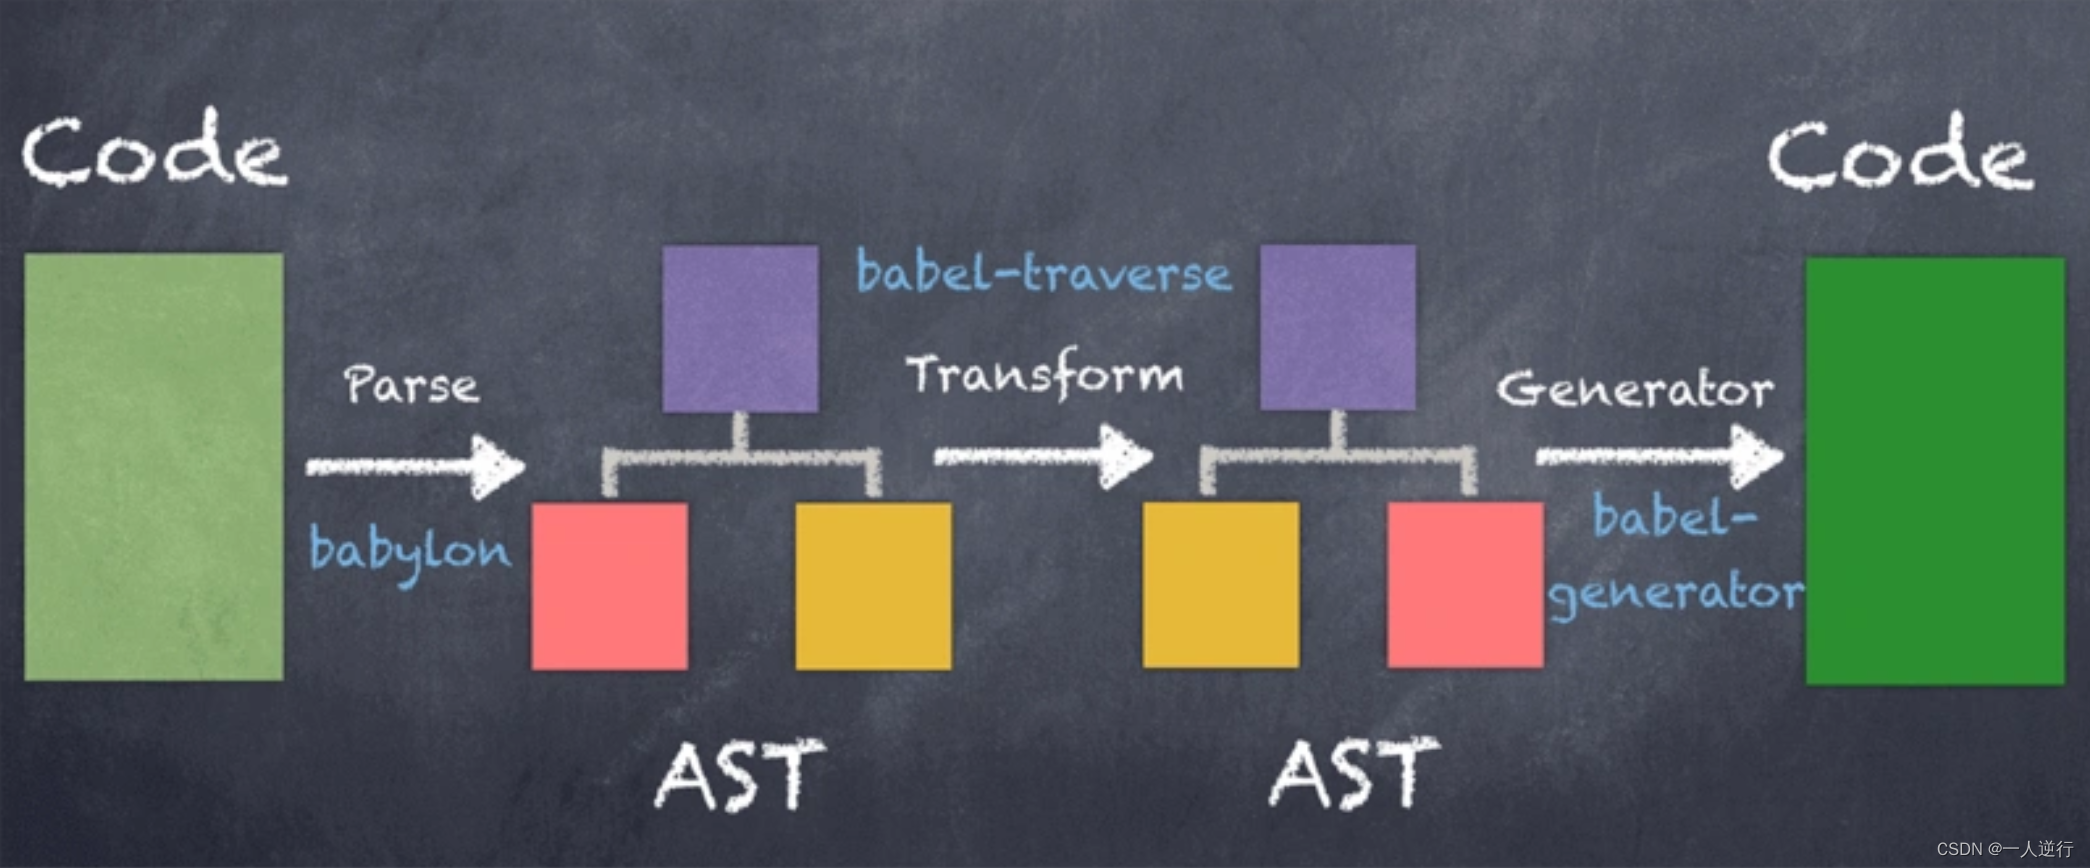 AST抽象语法树